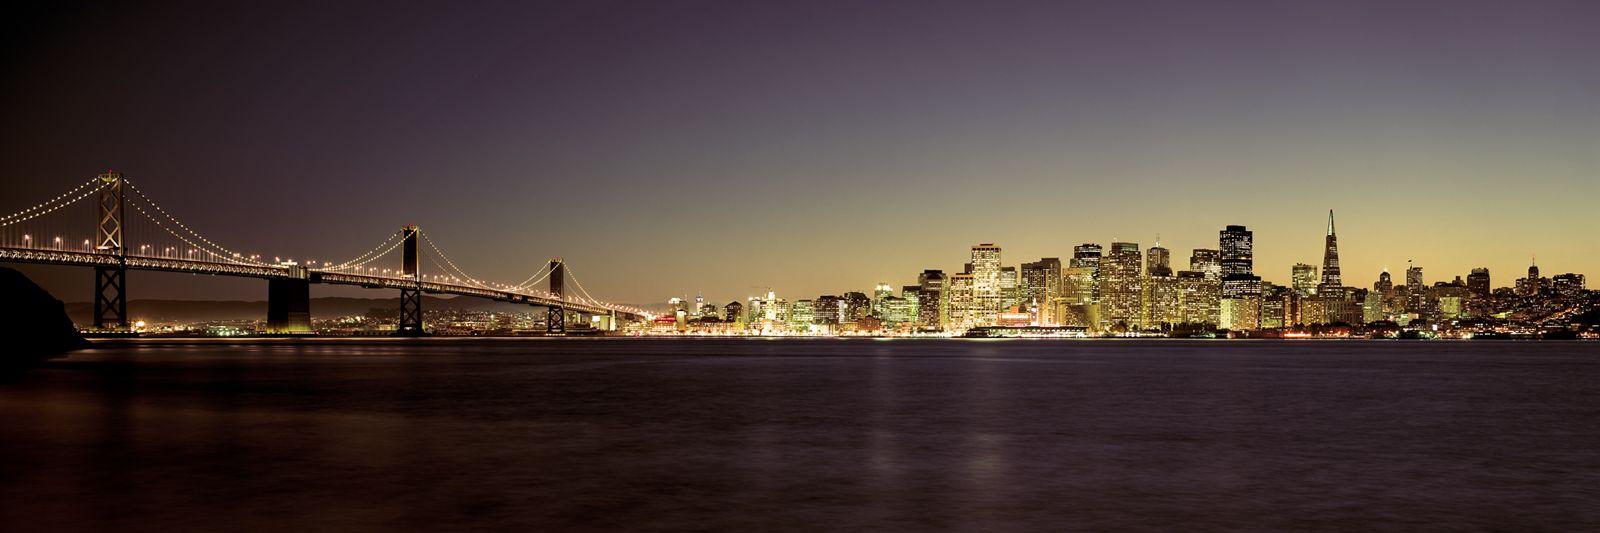 1600x533 Hình nền đường chân trời đêm của Cầu Vịnh San Francisco.  San Francisco